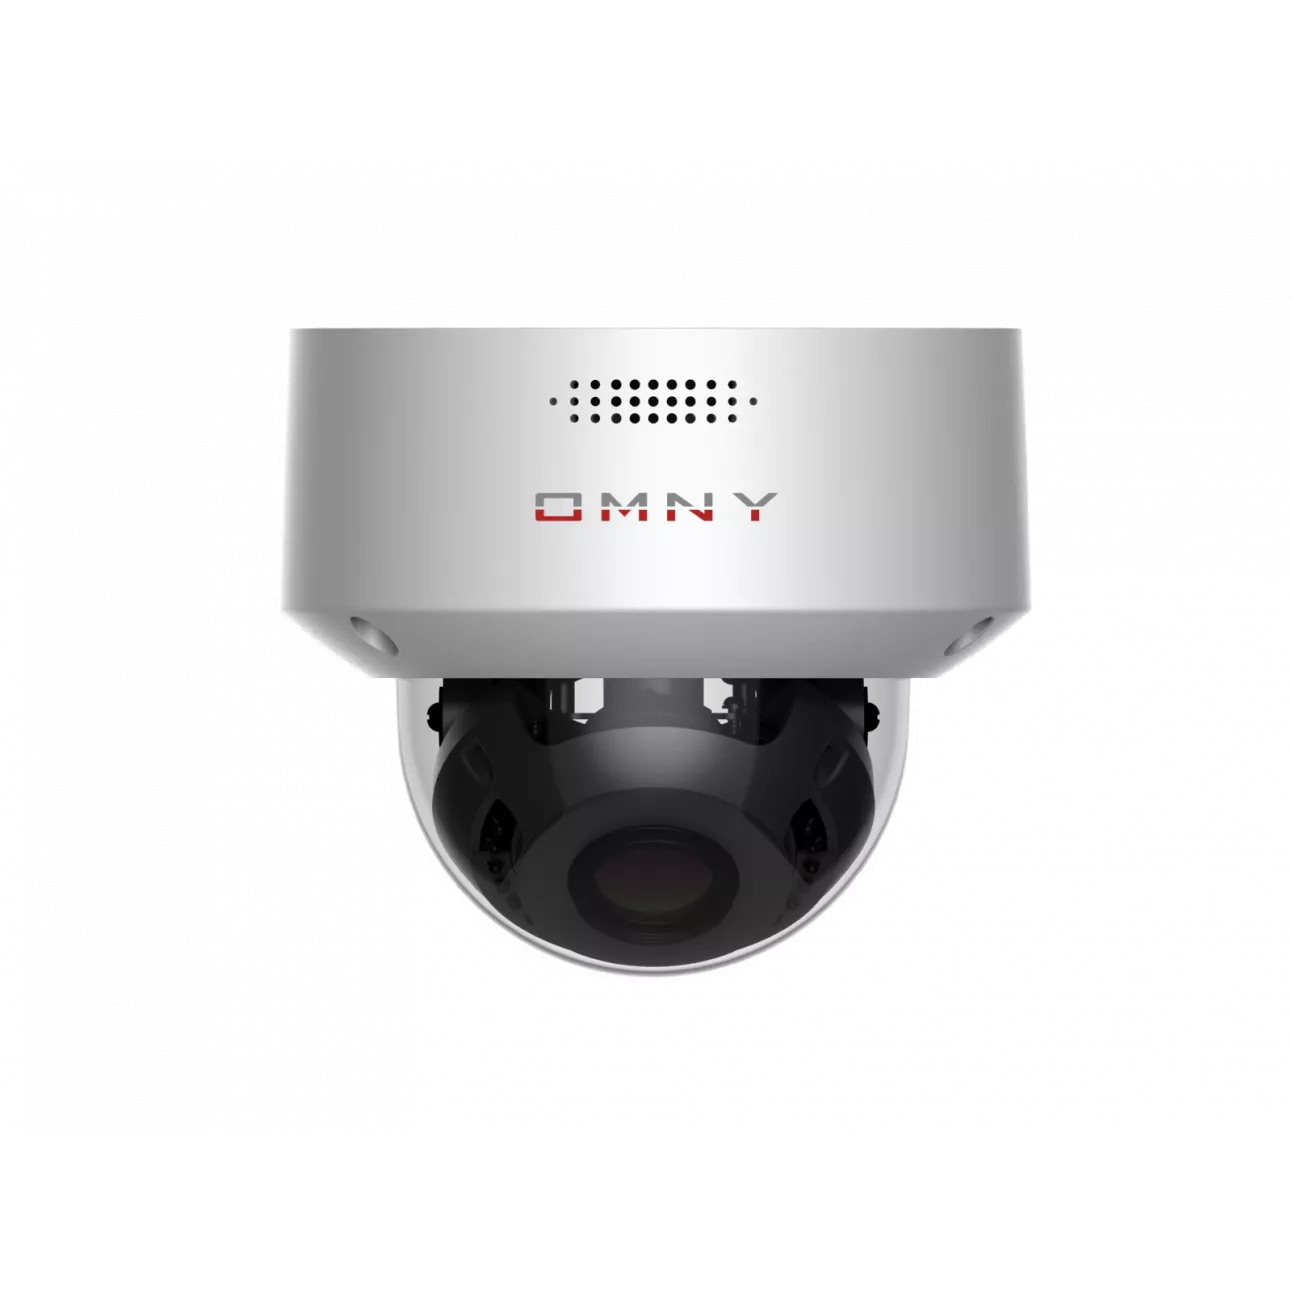 IP камера OMNY PRO M2L2SF 27135 купольная 2Мп (1920×1080) 30к/с, 2.7-13.5мм мотор, F1.6, EasyMic, аудиовых., встр.микр., 802.3af A/B, 12±1В DC